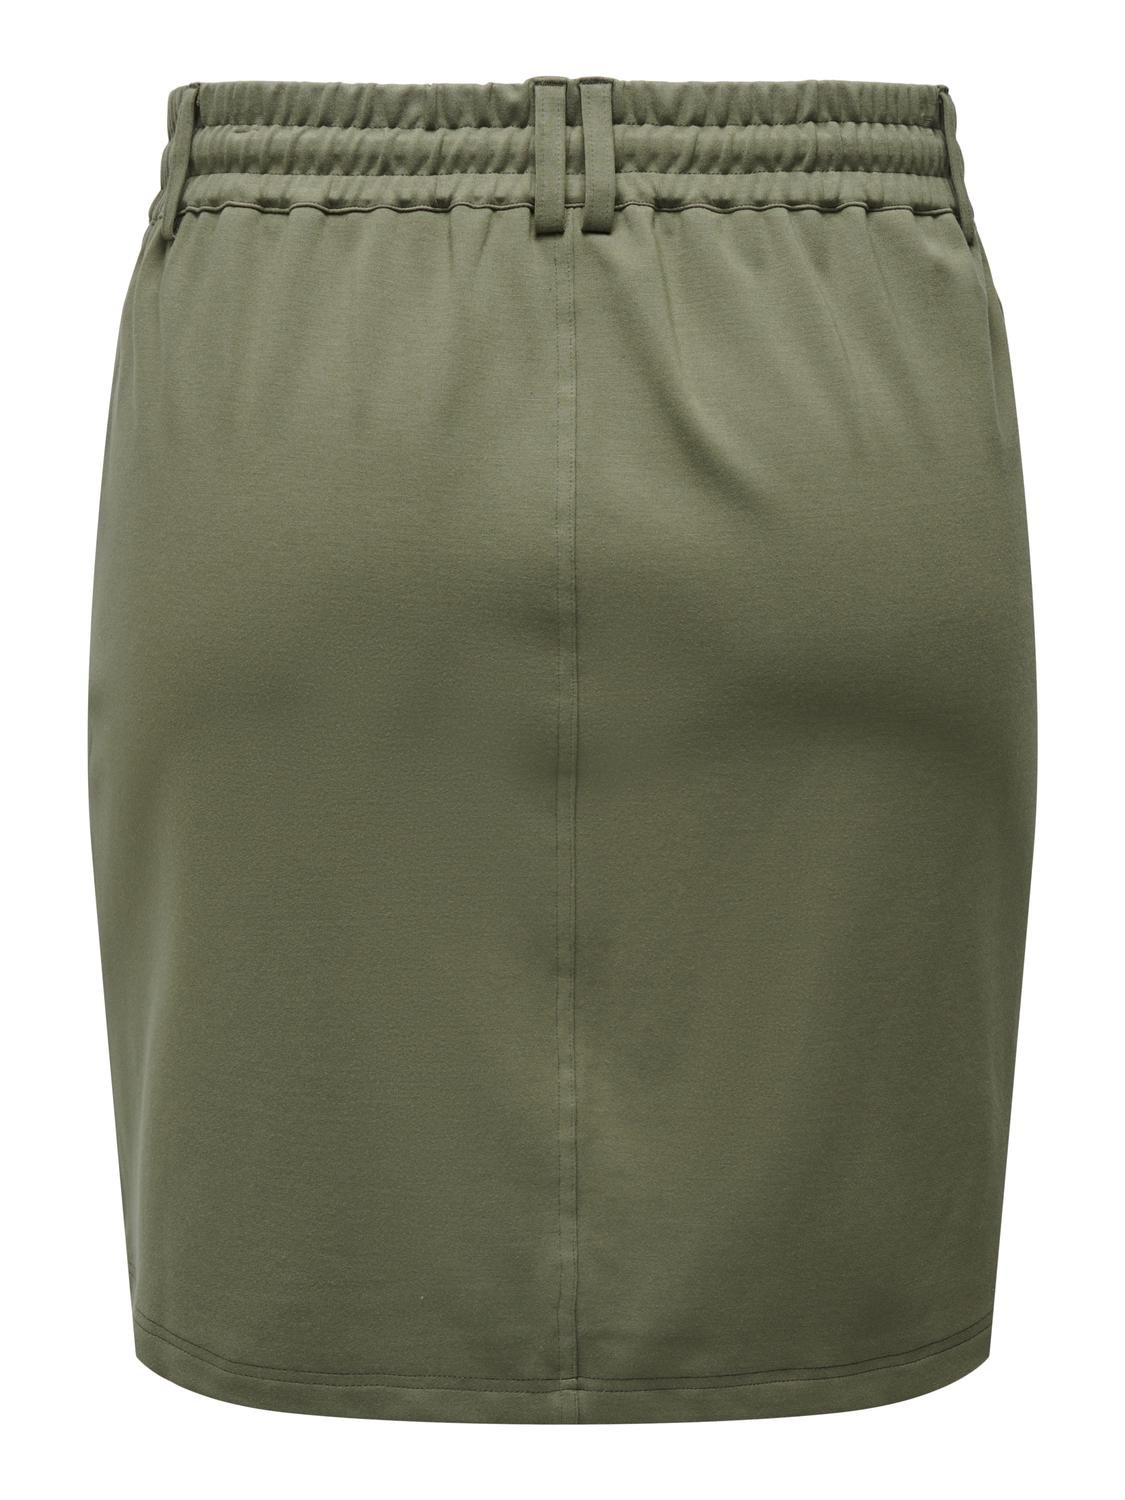 ONLY Curvy Skirt -Kalamata - 15168580